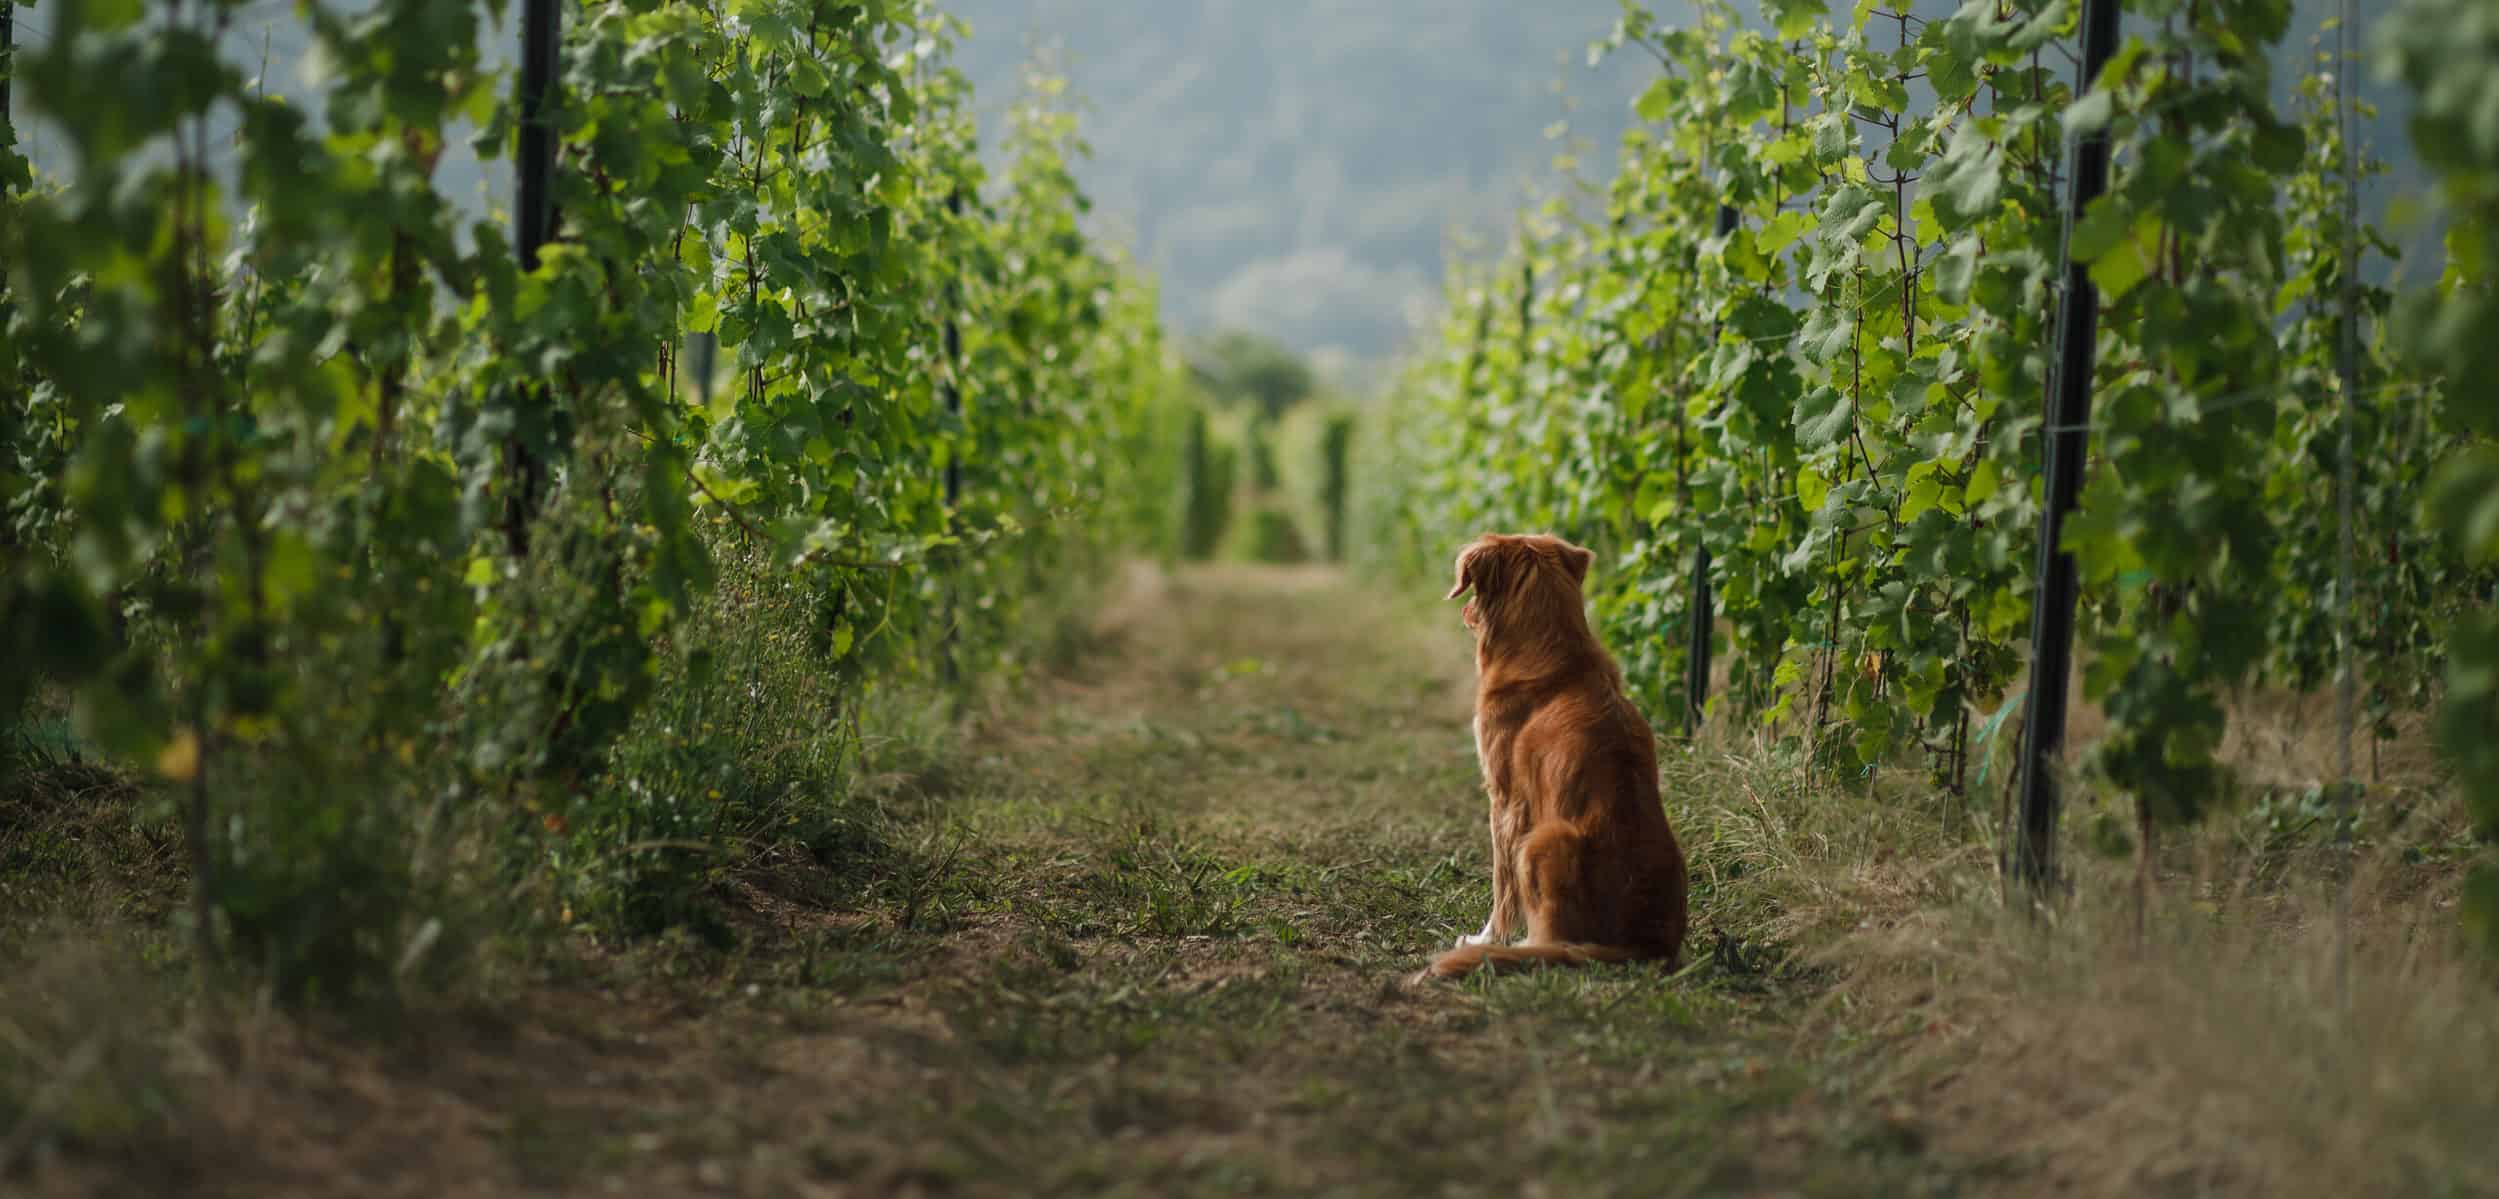 dog in a vineyard in nature. A pet in the summer, Nova Scotia Duck Tolling Retriever